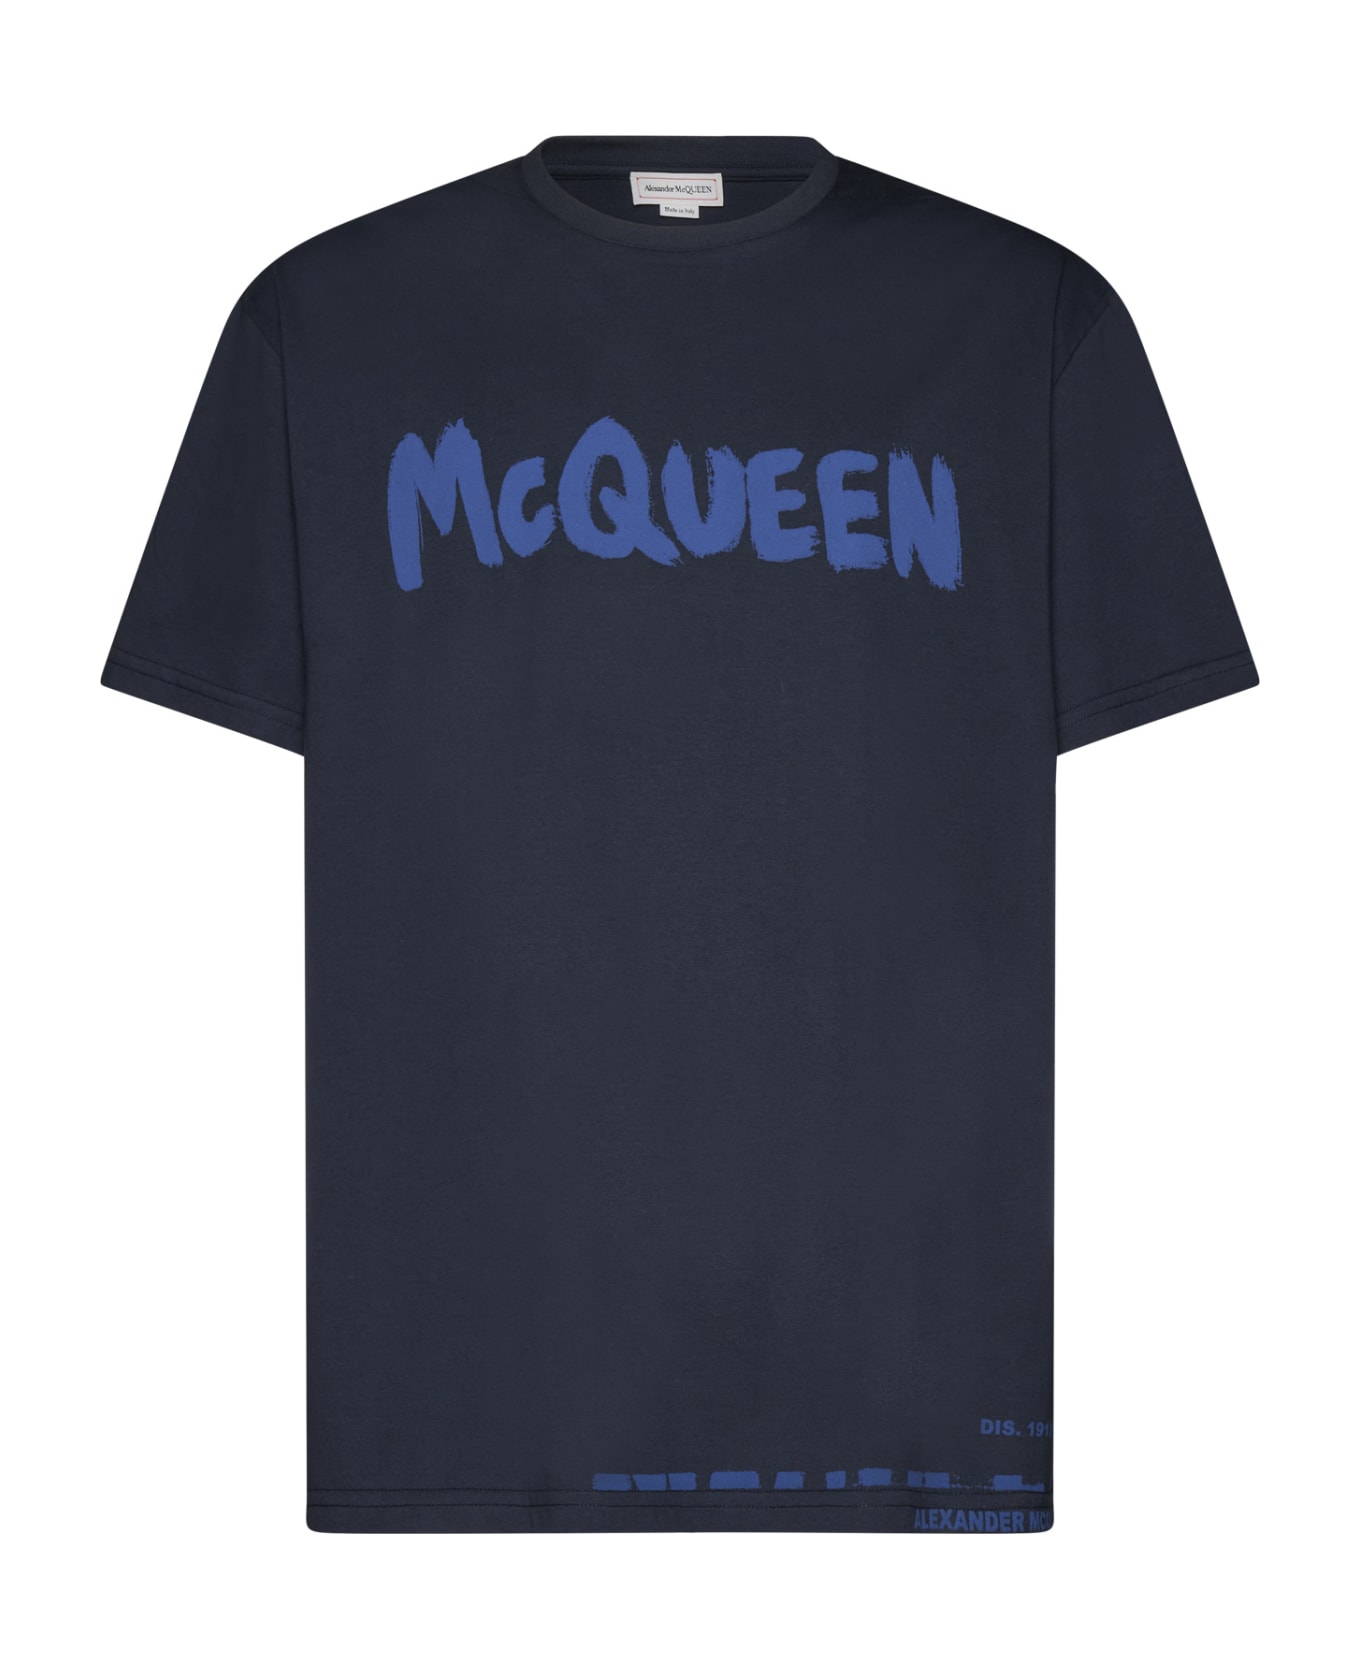 Alexander McQueen Printed T-shirt - Navy/cobalt